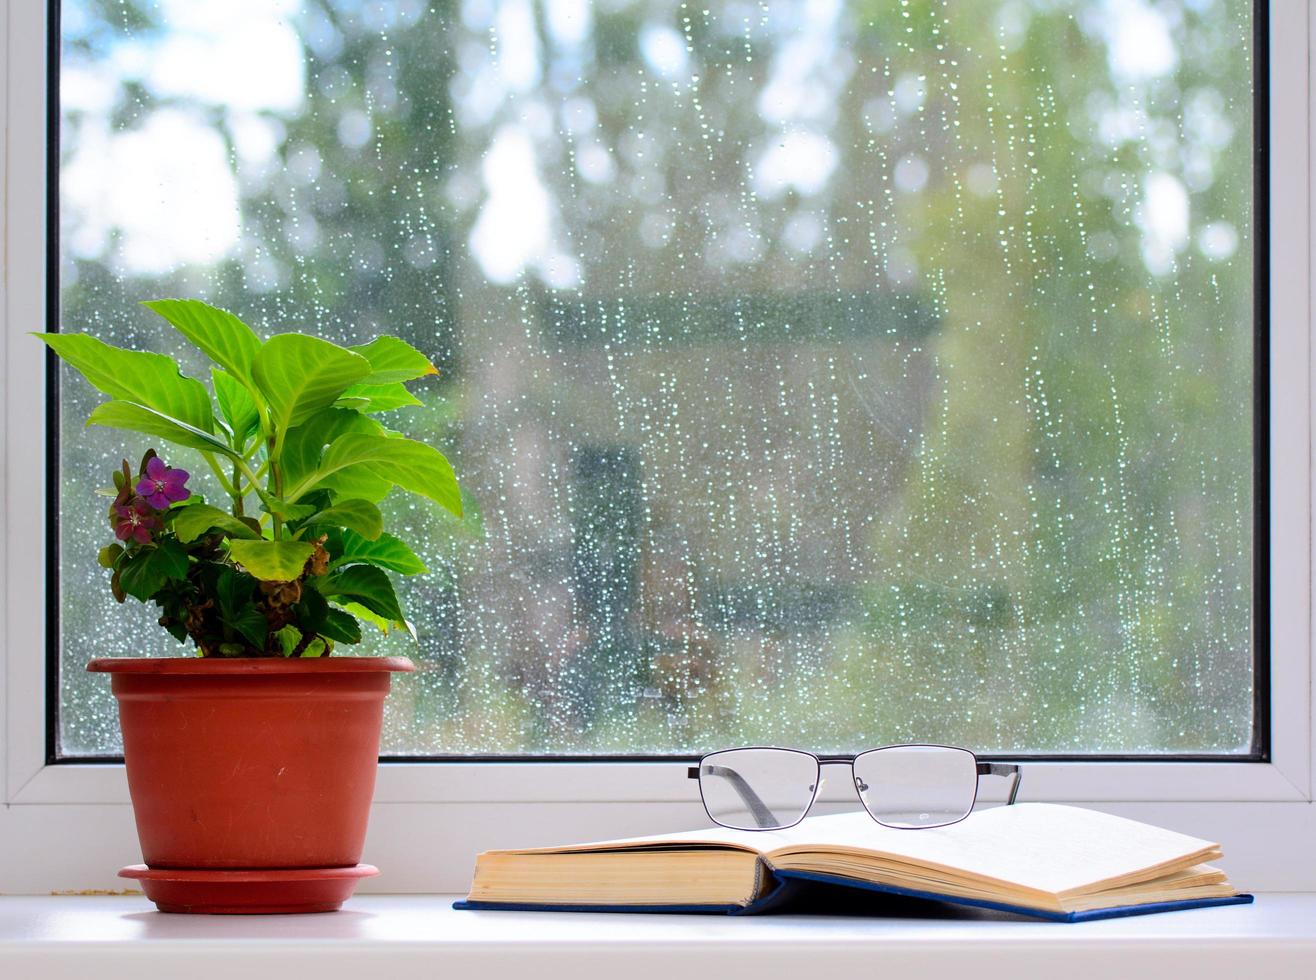 det finns en blomkruka på fönsterbrädan. en öppen bok ligger i närheten. det finns glasögon på boken. regndroppar i fönstret. konceptet är hemmavila. foto